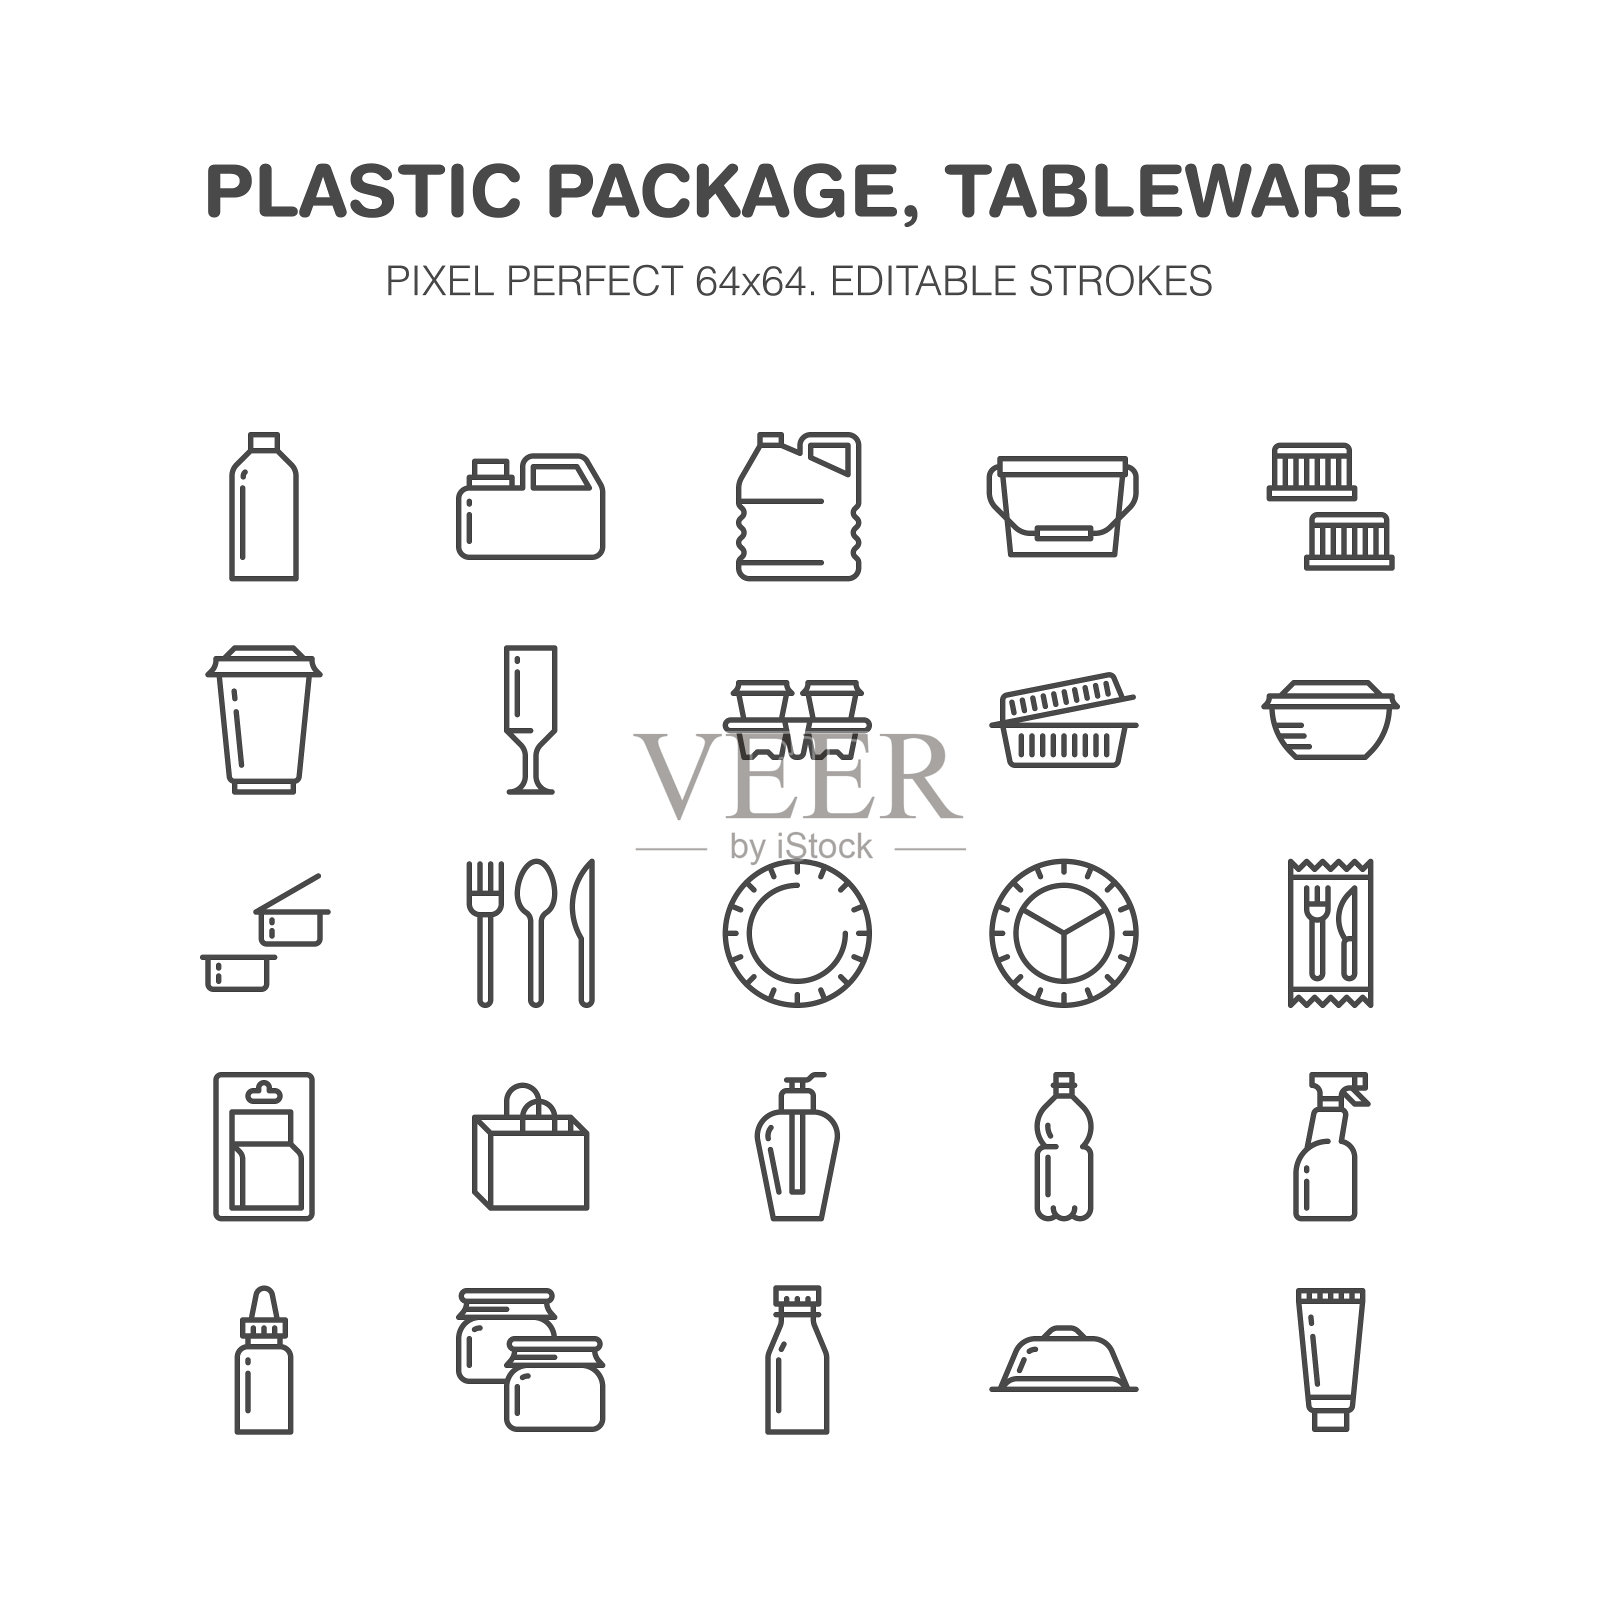 塑料包装，一次性餐具线图标。产品包装，容器，瓶，罐，盘子，餐具。集装箱薄标志店，合成材料商品生产。像素完美64 x64图标素材